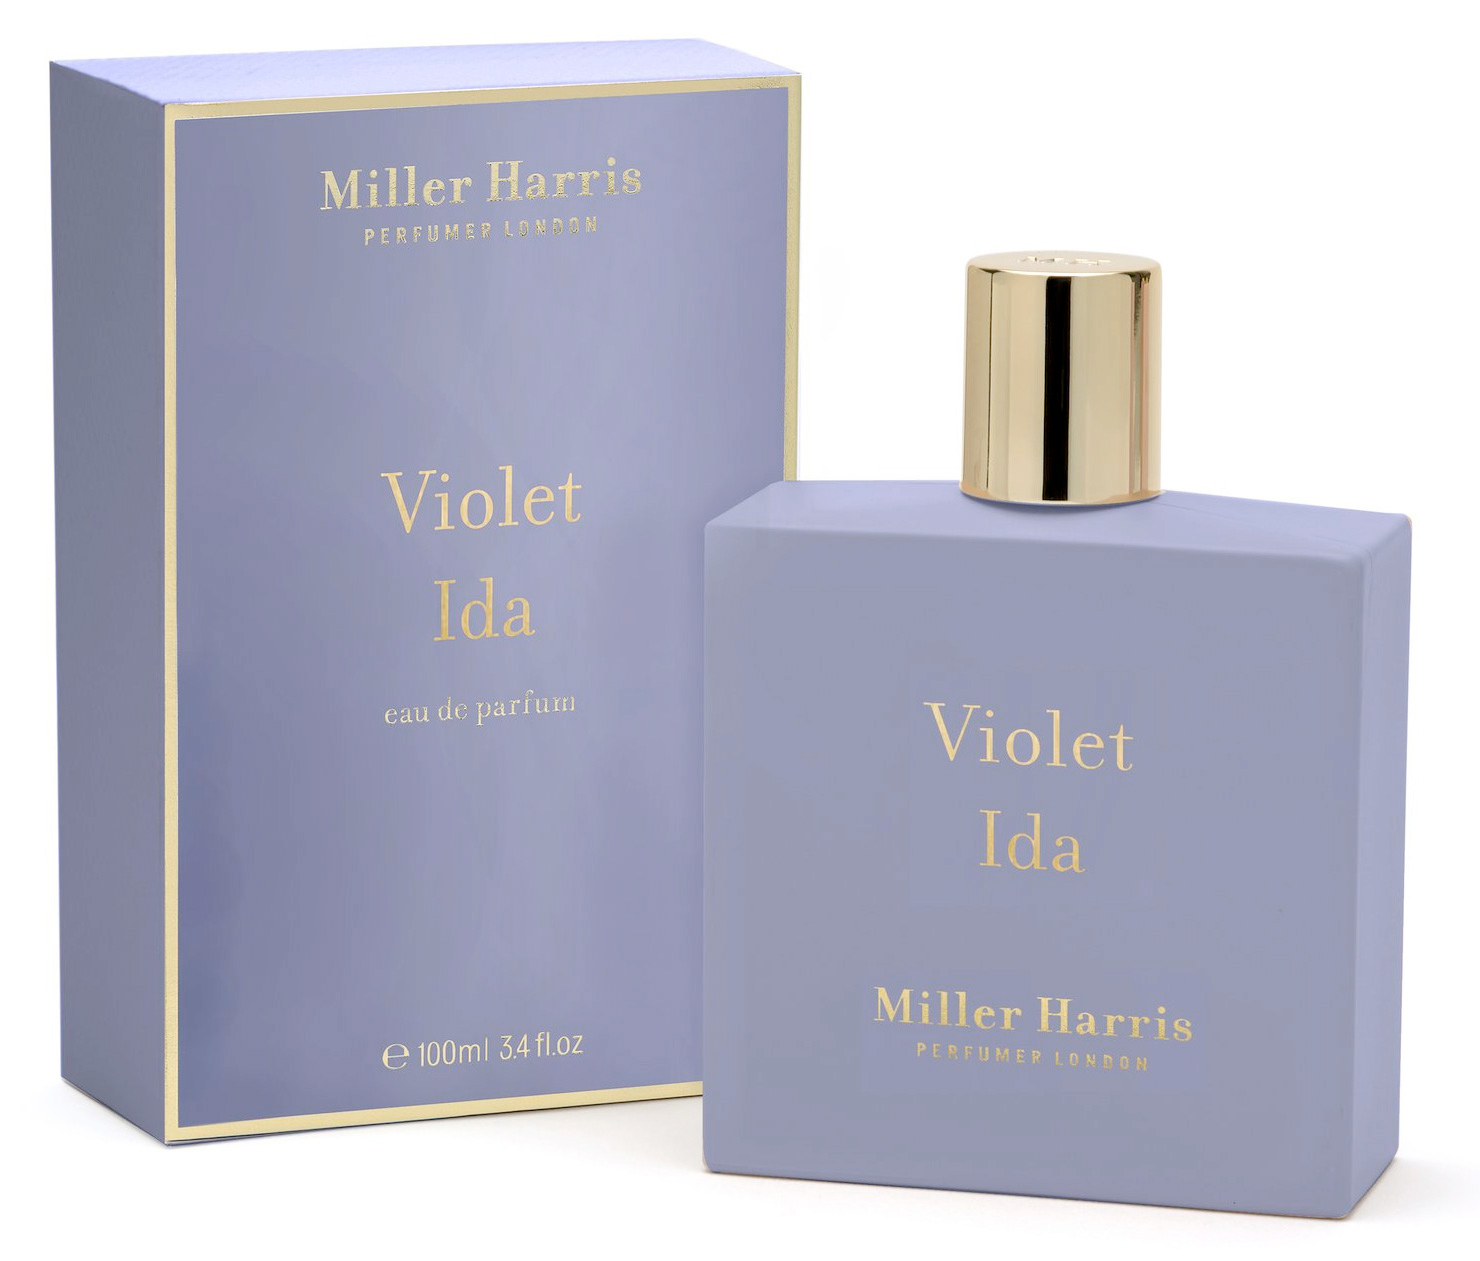 Violet Ida Miller Harris: A Very Unusual Violet Perfume